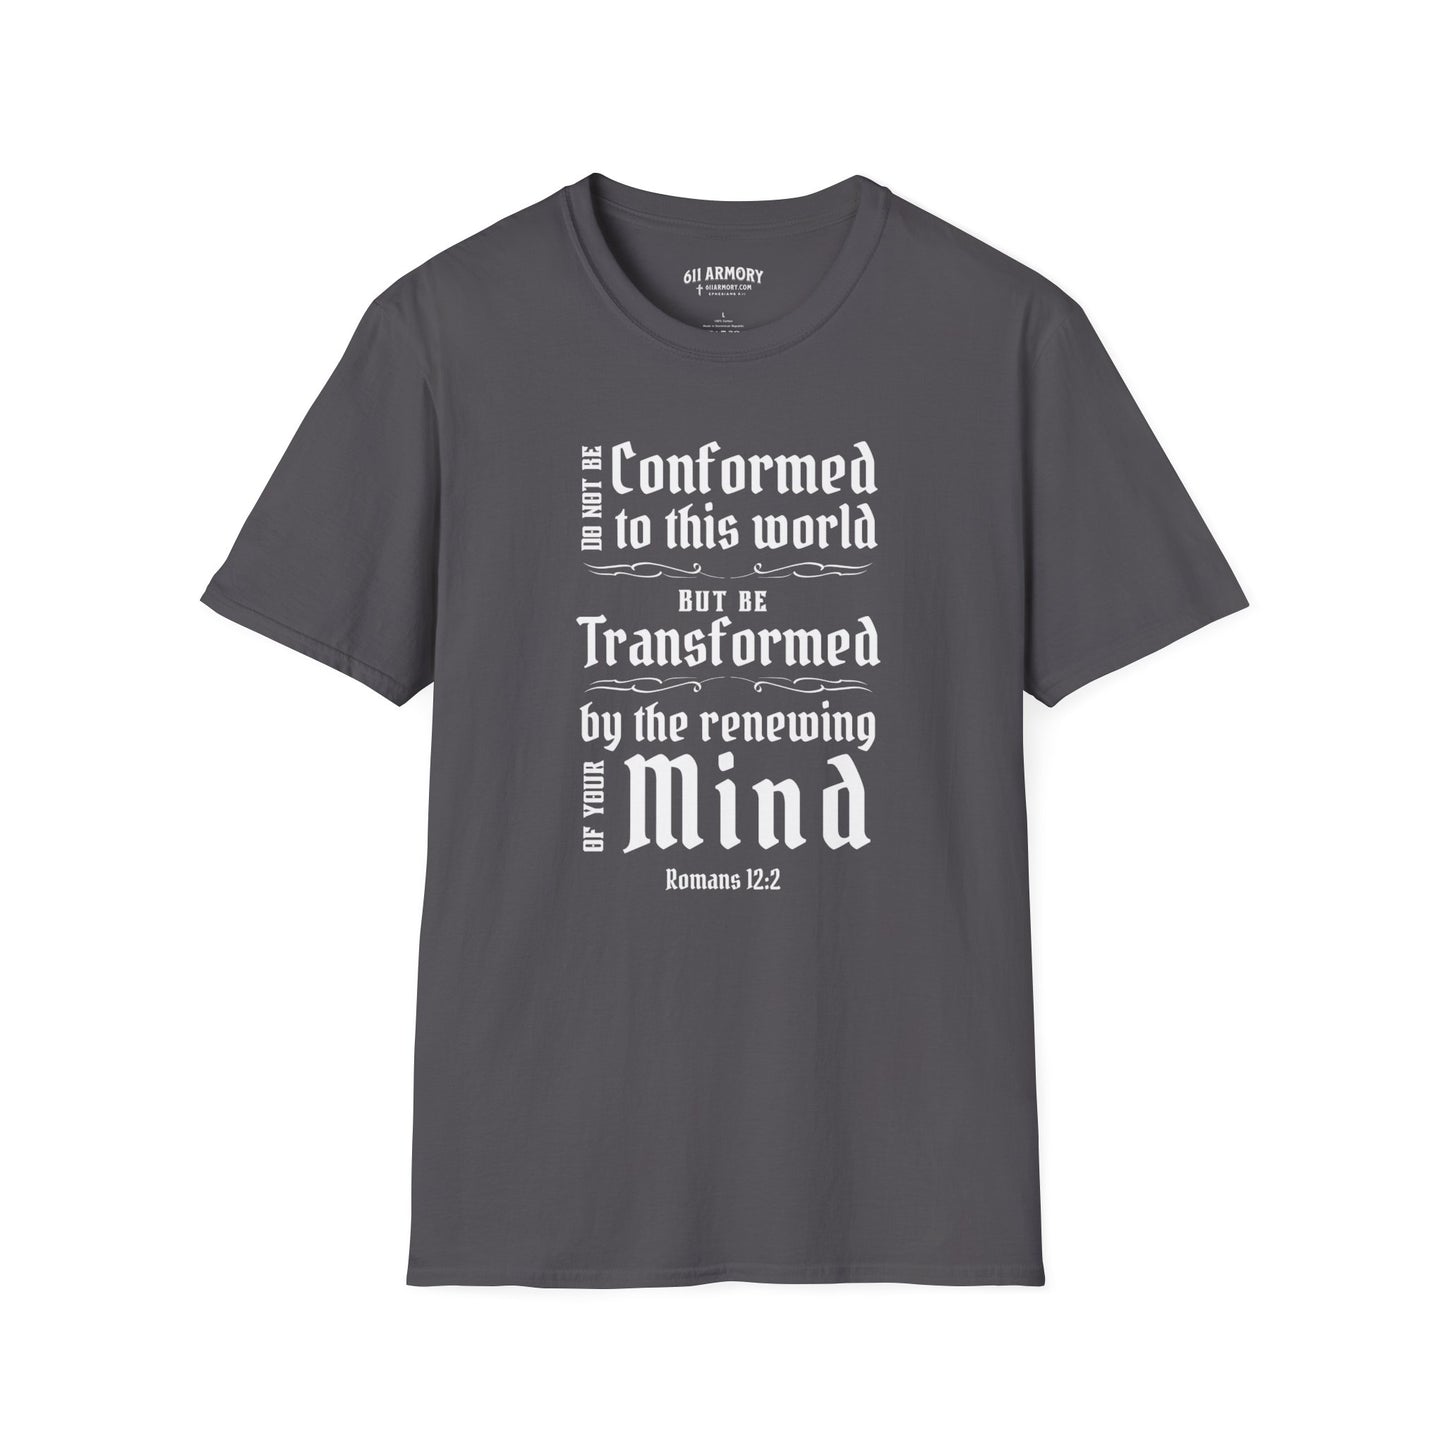 Romans 12:2 Scripture T-shirt